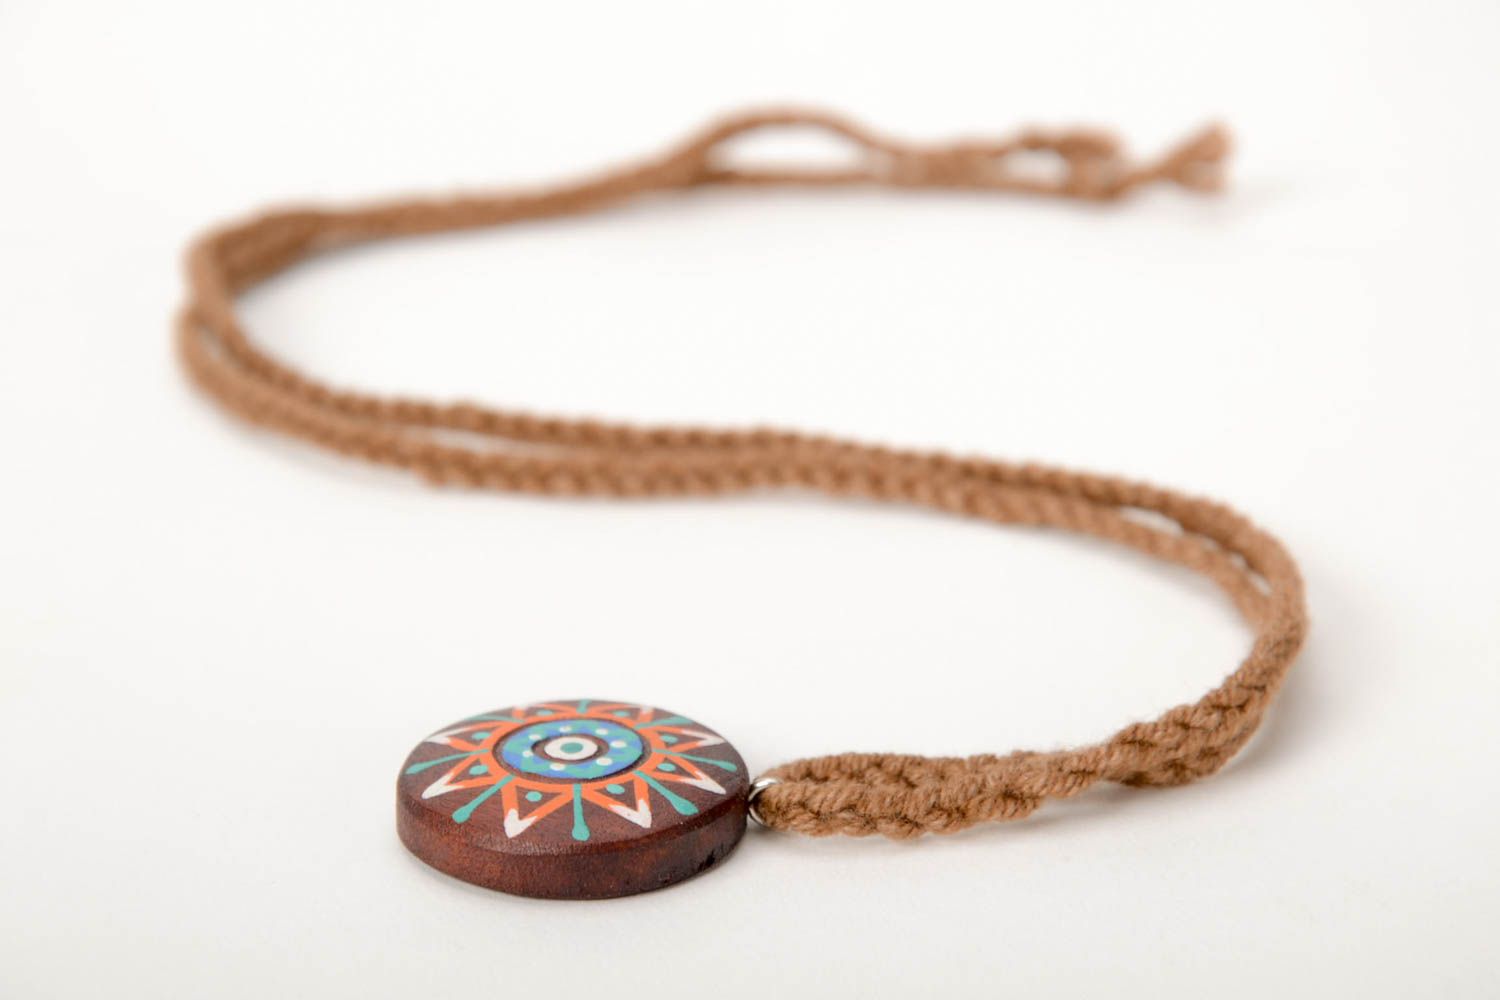 Handmade pendant wooden pendant designer accessories gift for girl wood pendant photo 5